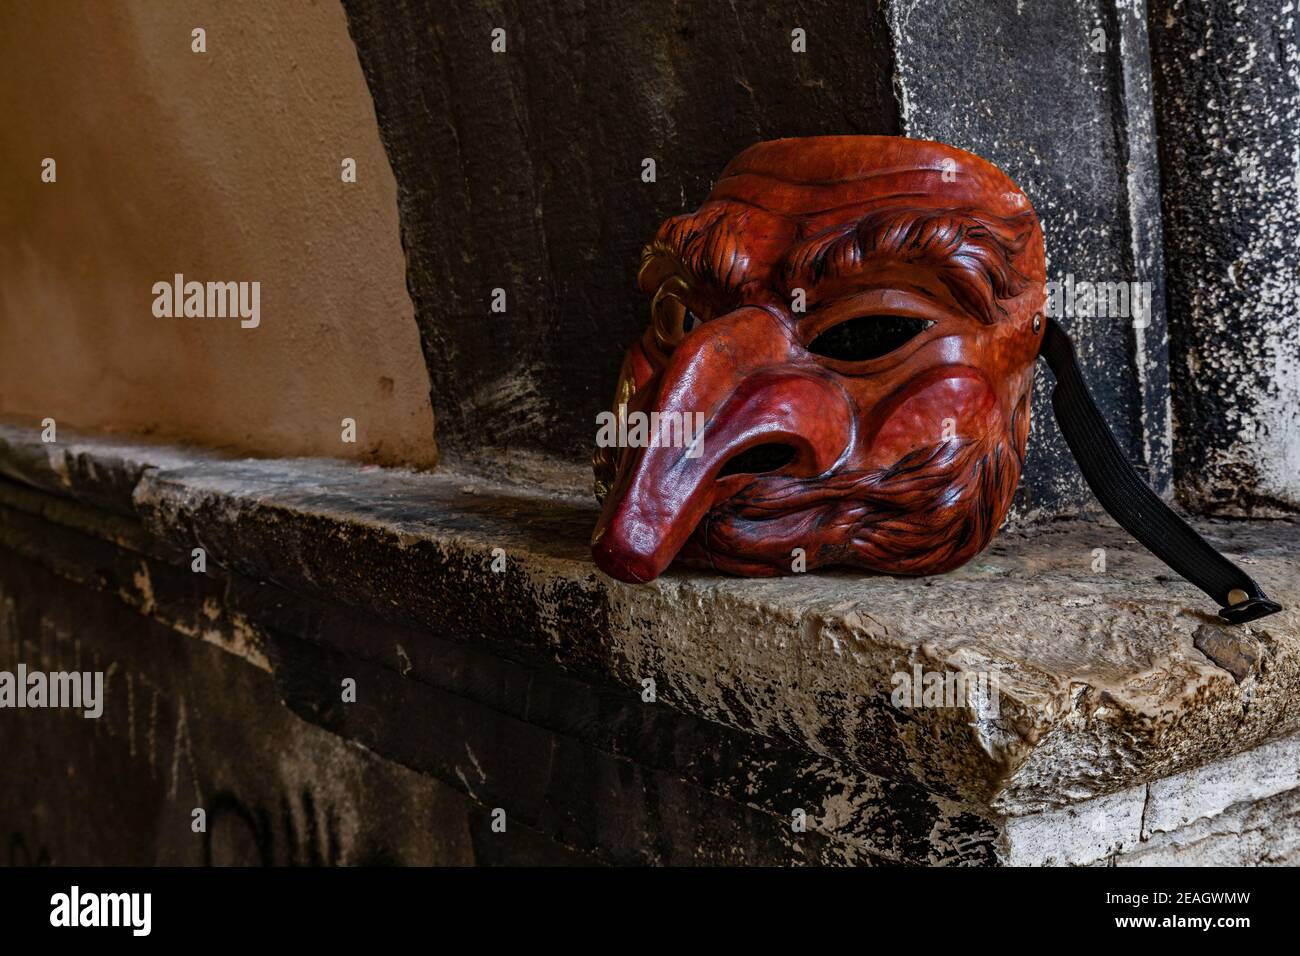 Masque de théâtre en cuir d'il Capitano (le capitaine) par l'artiste Carlo Setti de Venise qui se spécialise dans les masques Commedia dell'Arte. Banque D'Images